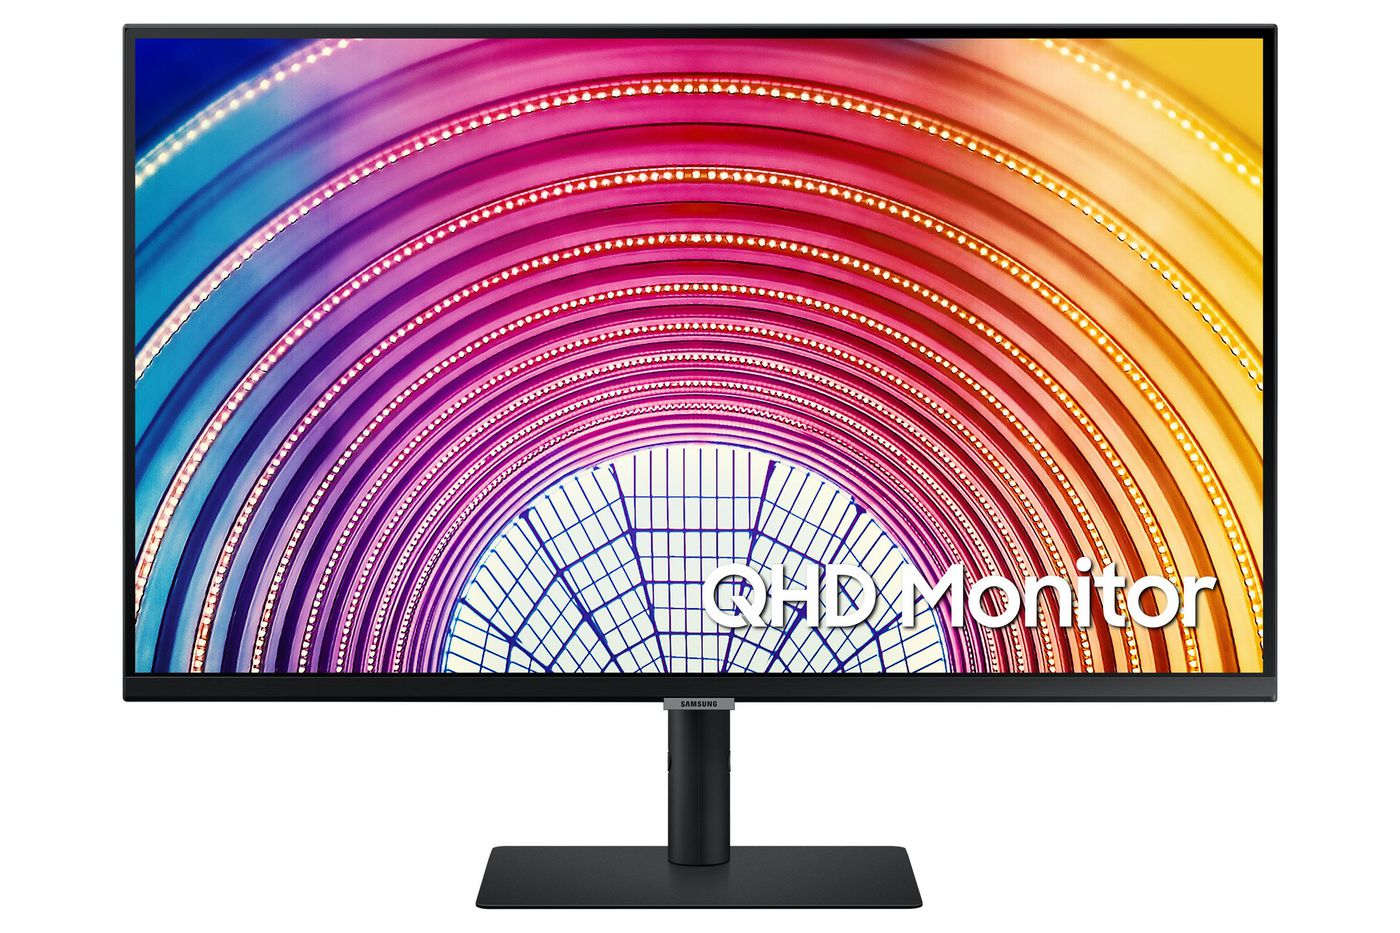 Desktop Monitor - S32a600nwu - 32in - 2560 X 1440